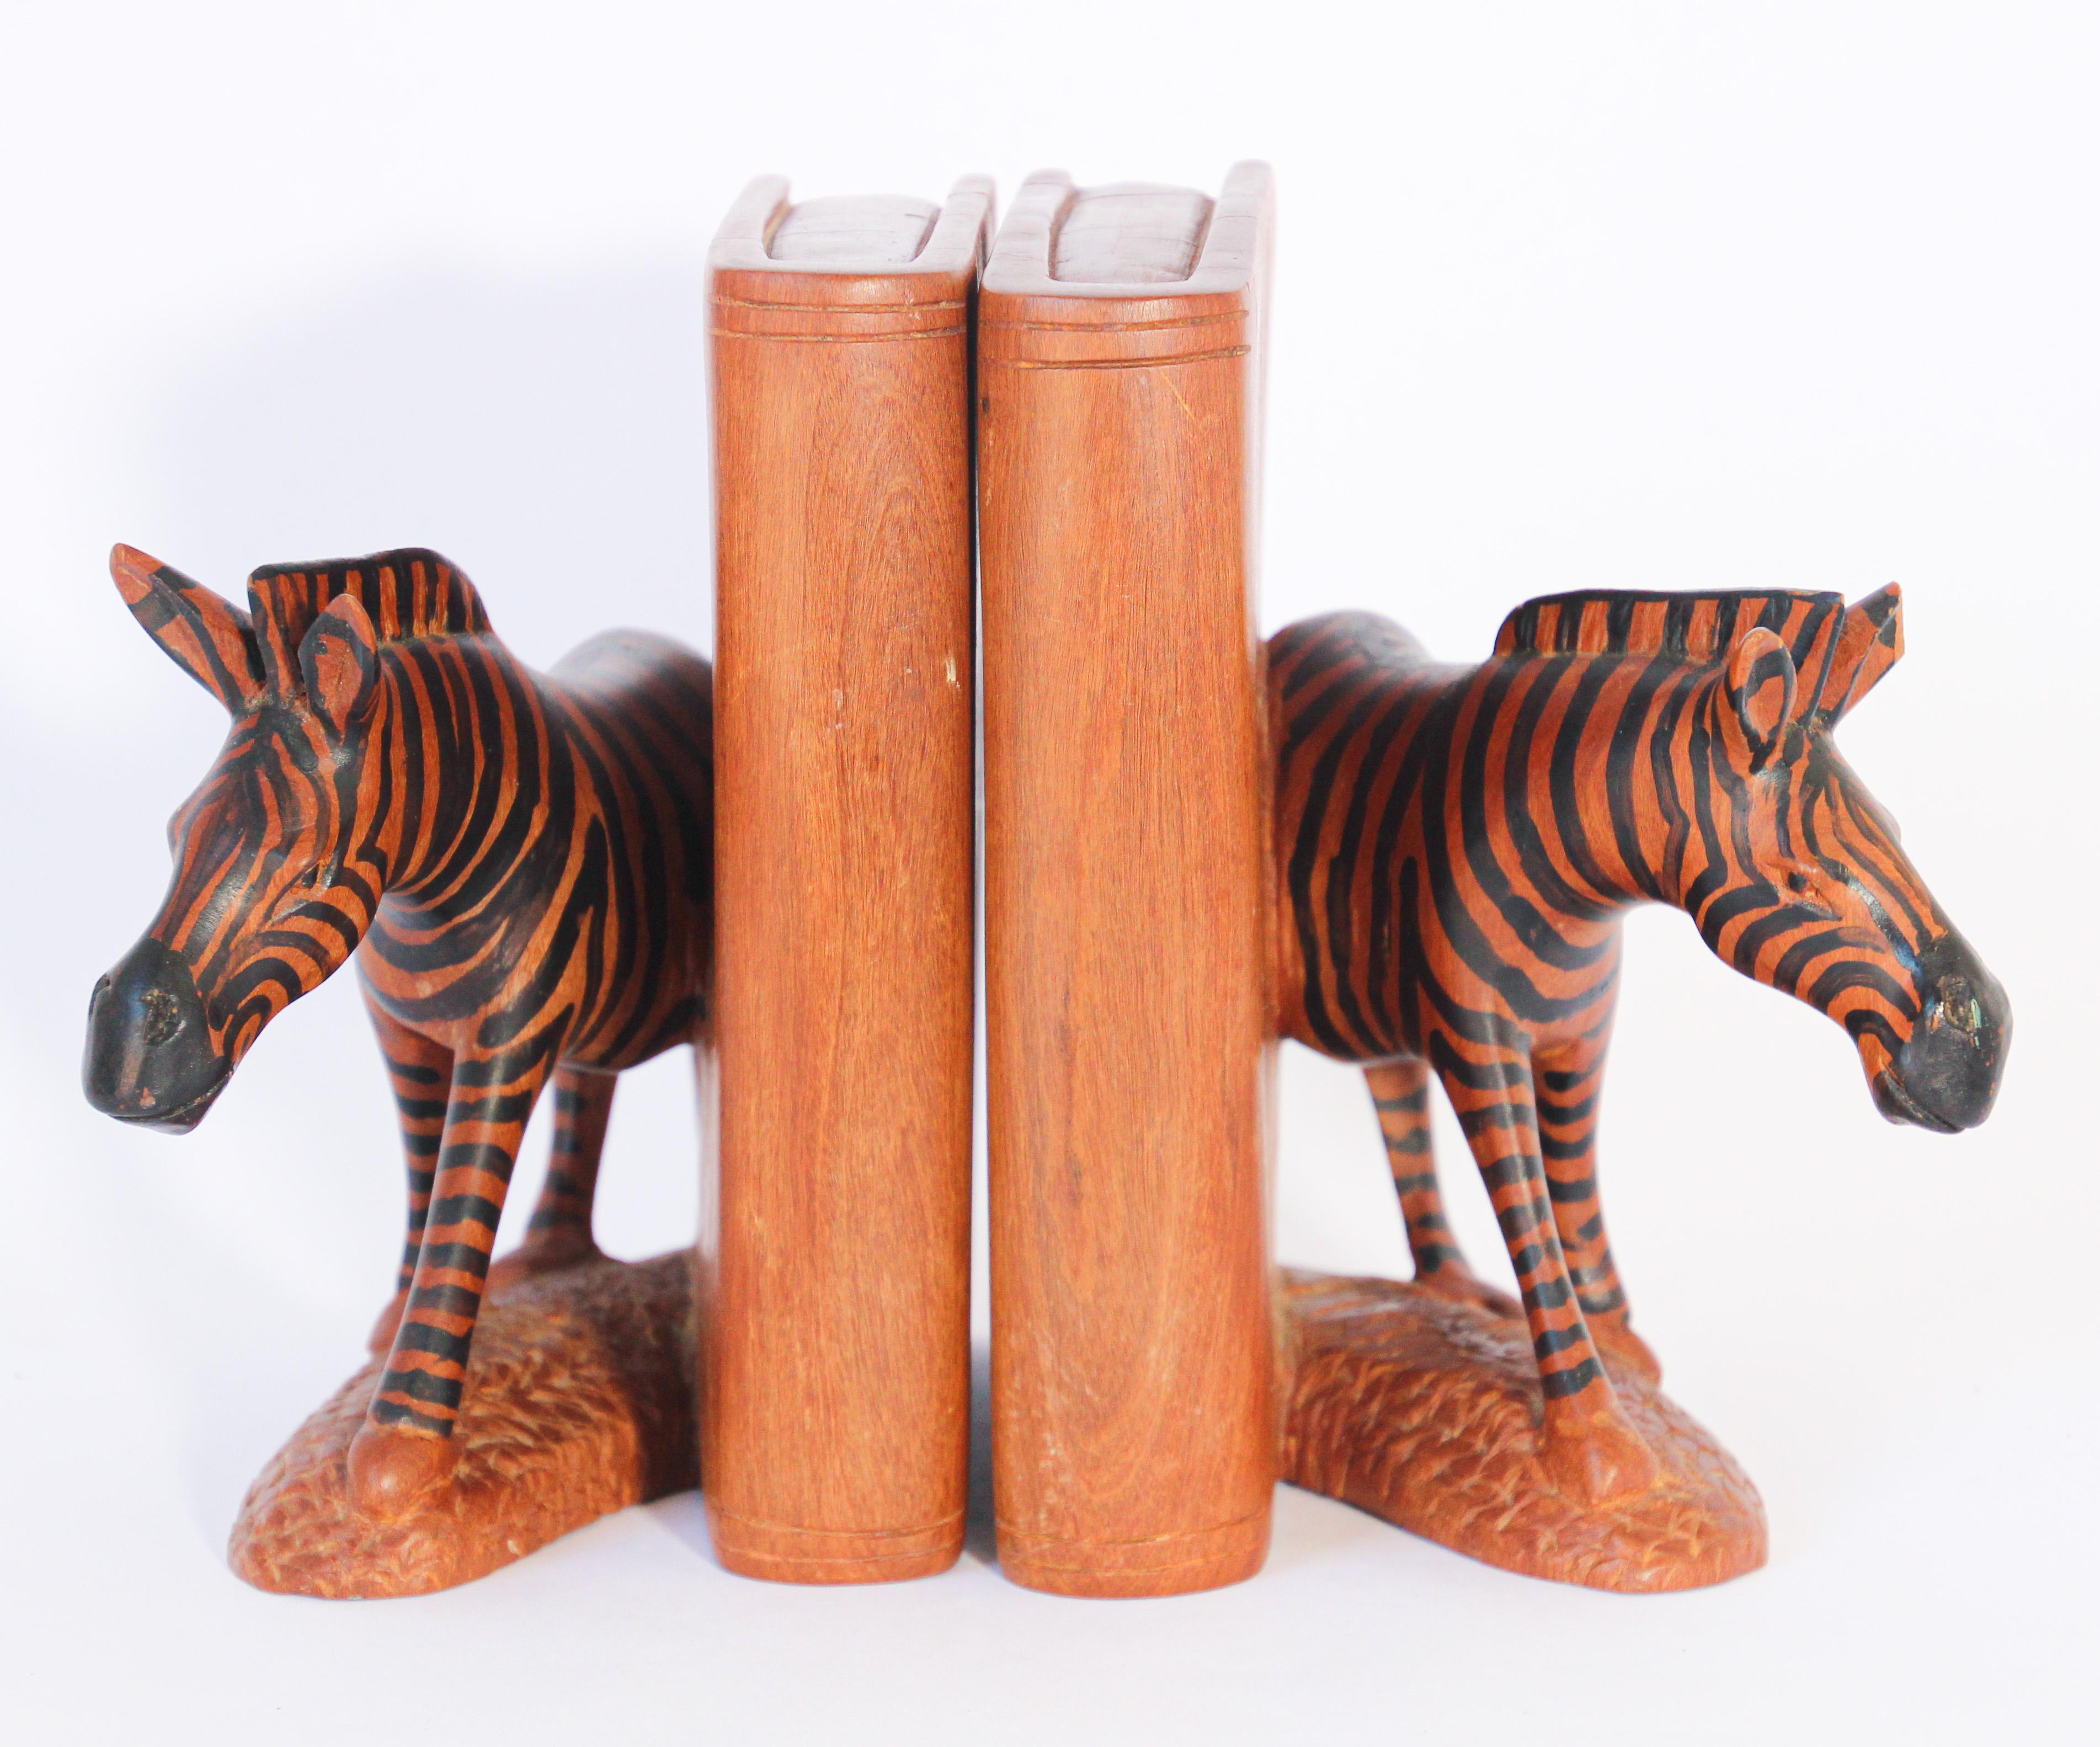 Schönes Paar handgeschnitzte schwere Holz Buchstützen afrikanische Zebra-Skulpturen.
Diese feine detaillierte Hand geschnitzt und handbemalt Elefanten Buchstützen.
Jede Zebra-Skulptur mit Sockel und Seite ist aus 1 Stück Holz handgefertigt.
Sie